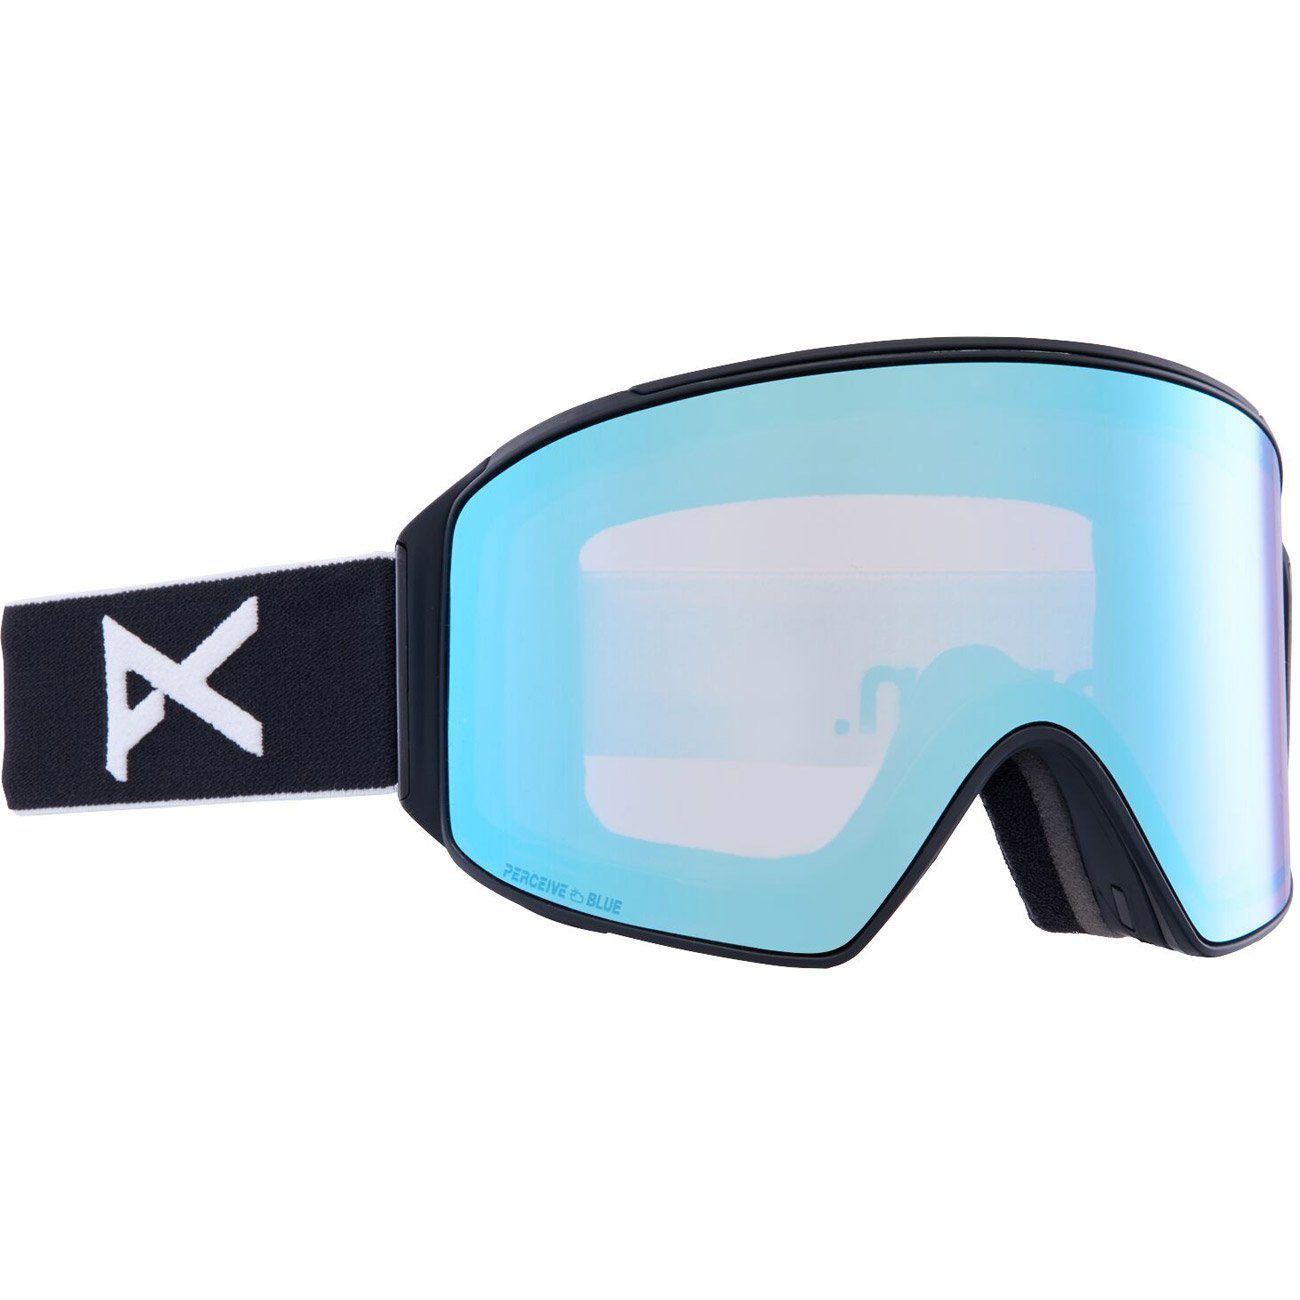 Snowboardbrille, M4 blue vrbl black/prcv Anon CYLINDRICAL